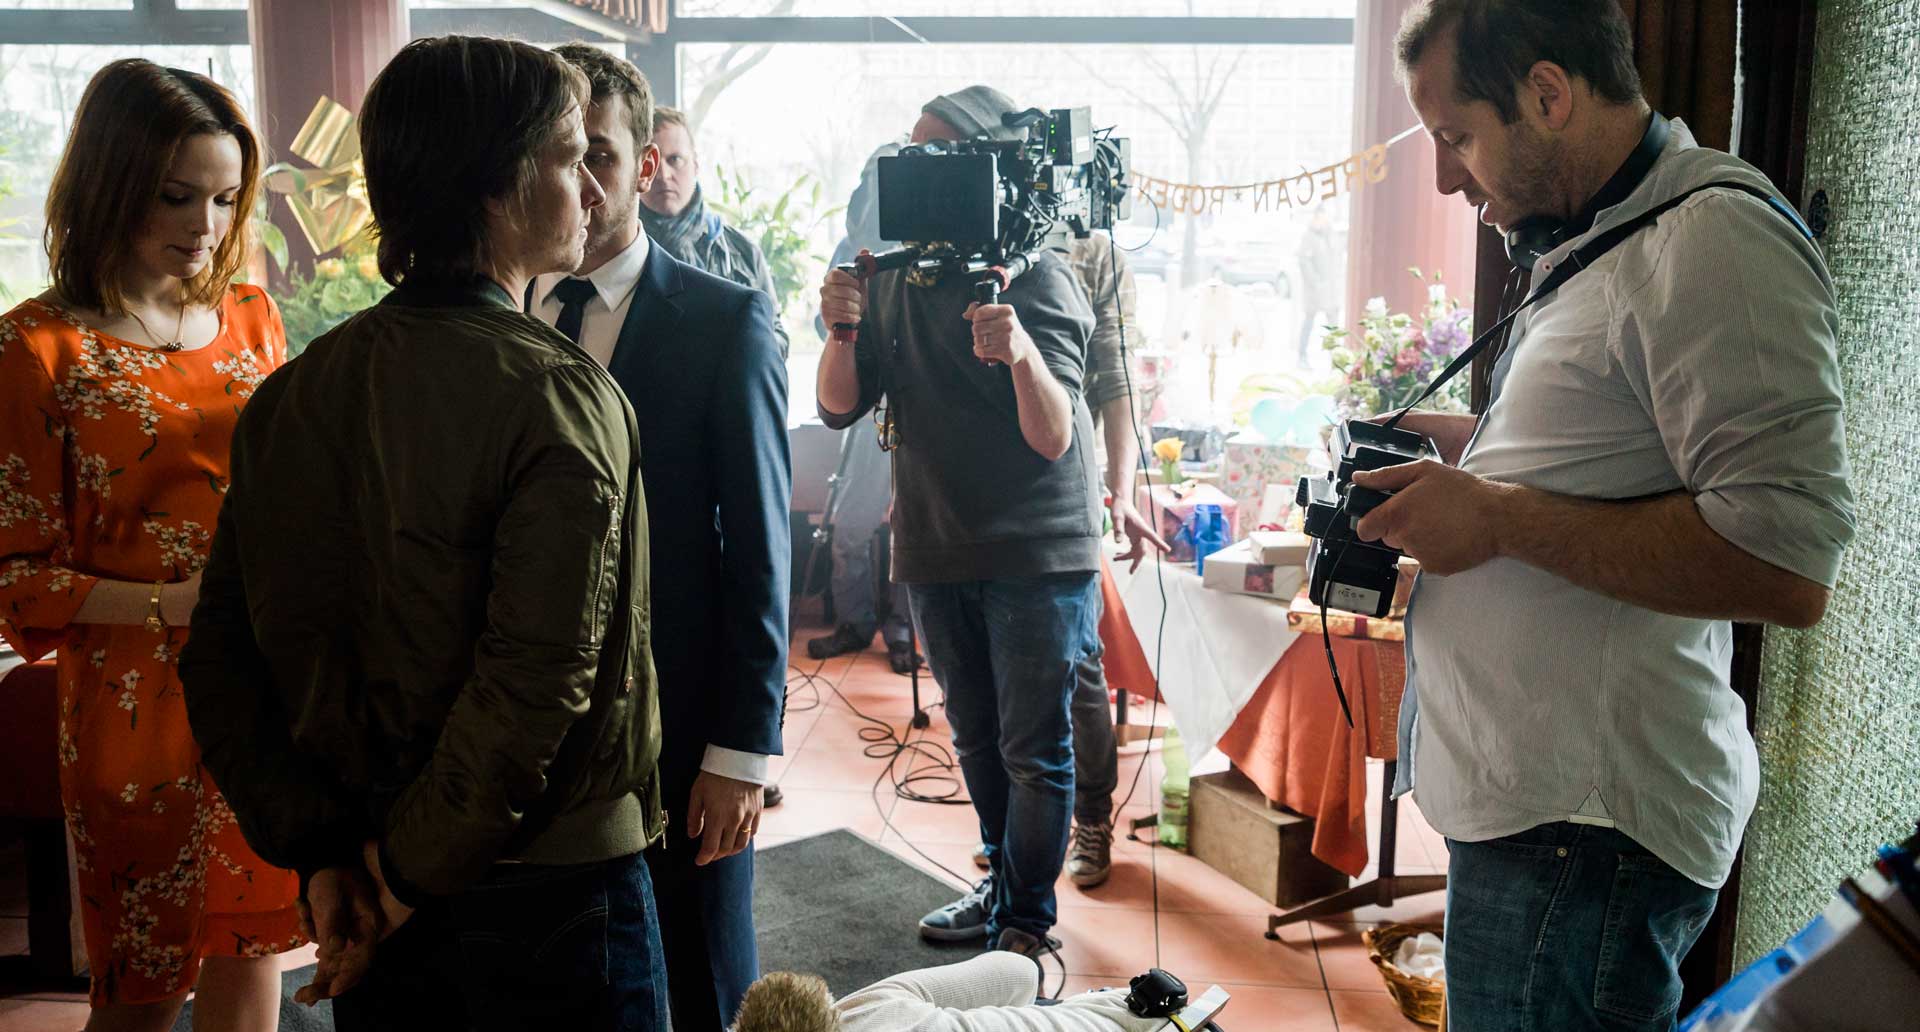 "Auf kurze Distanz" - Behind the scenes / Regisseur Philipp Kadelbach (r.) checkt das finale Bild während die Schauspieler auf Position Stehen.